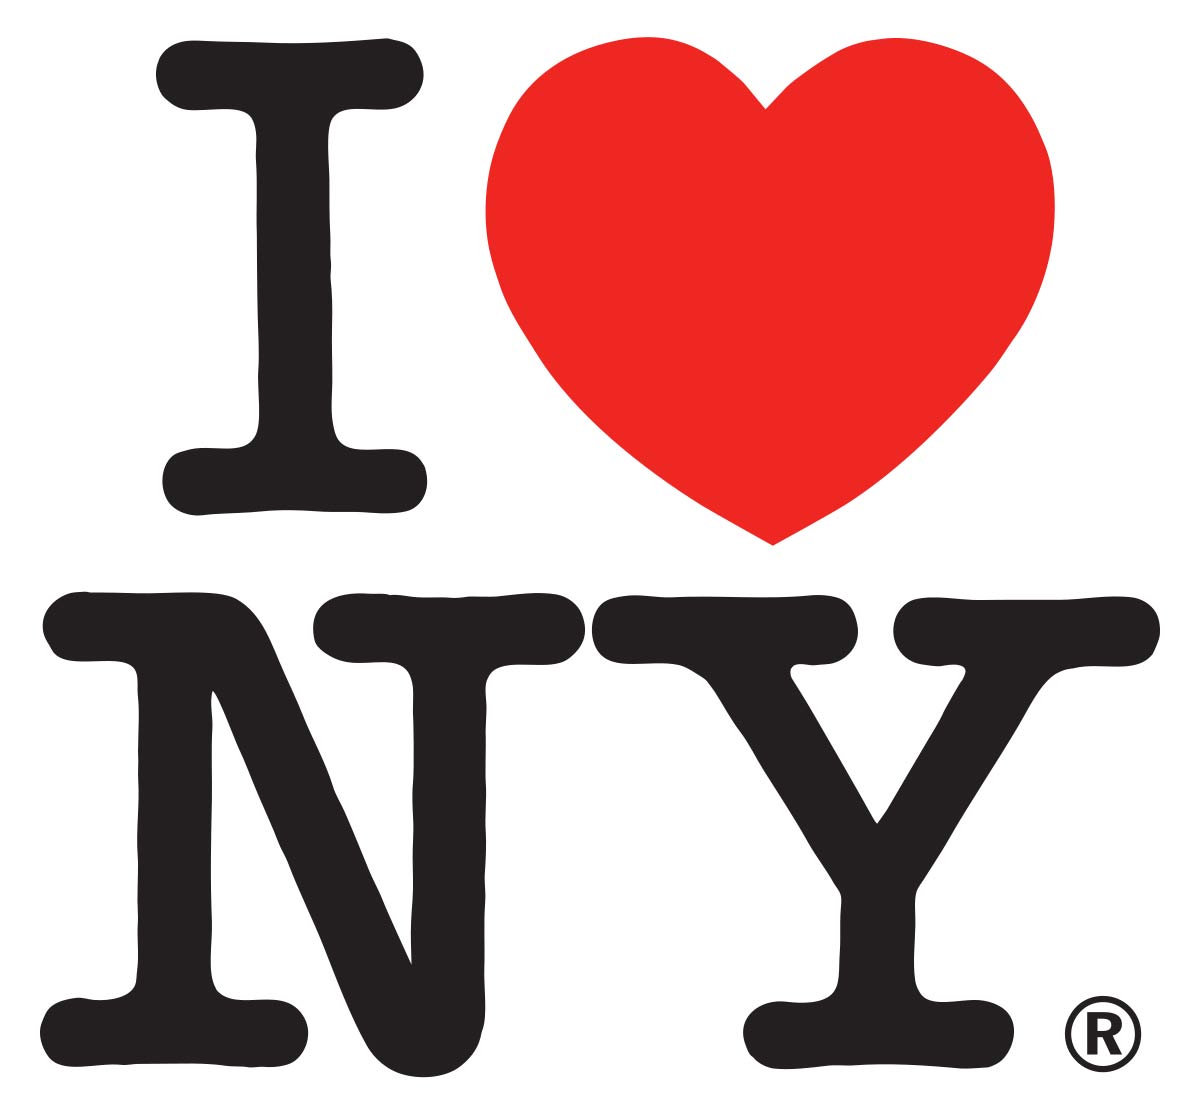 Identidad gráfica de la ciudad de Nueva York. Nuevo logo CDMX